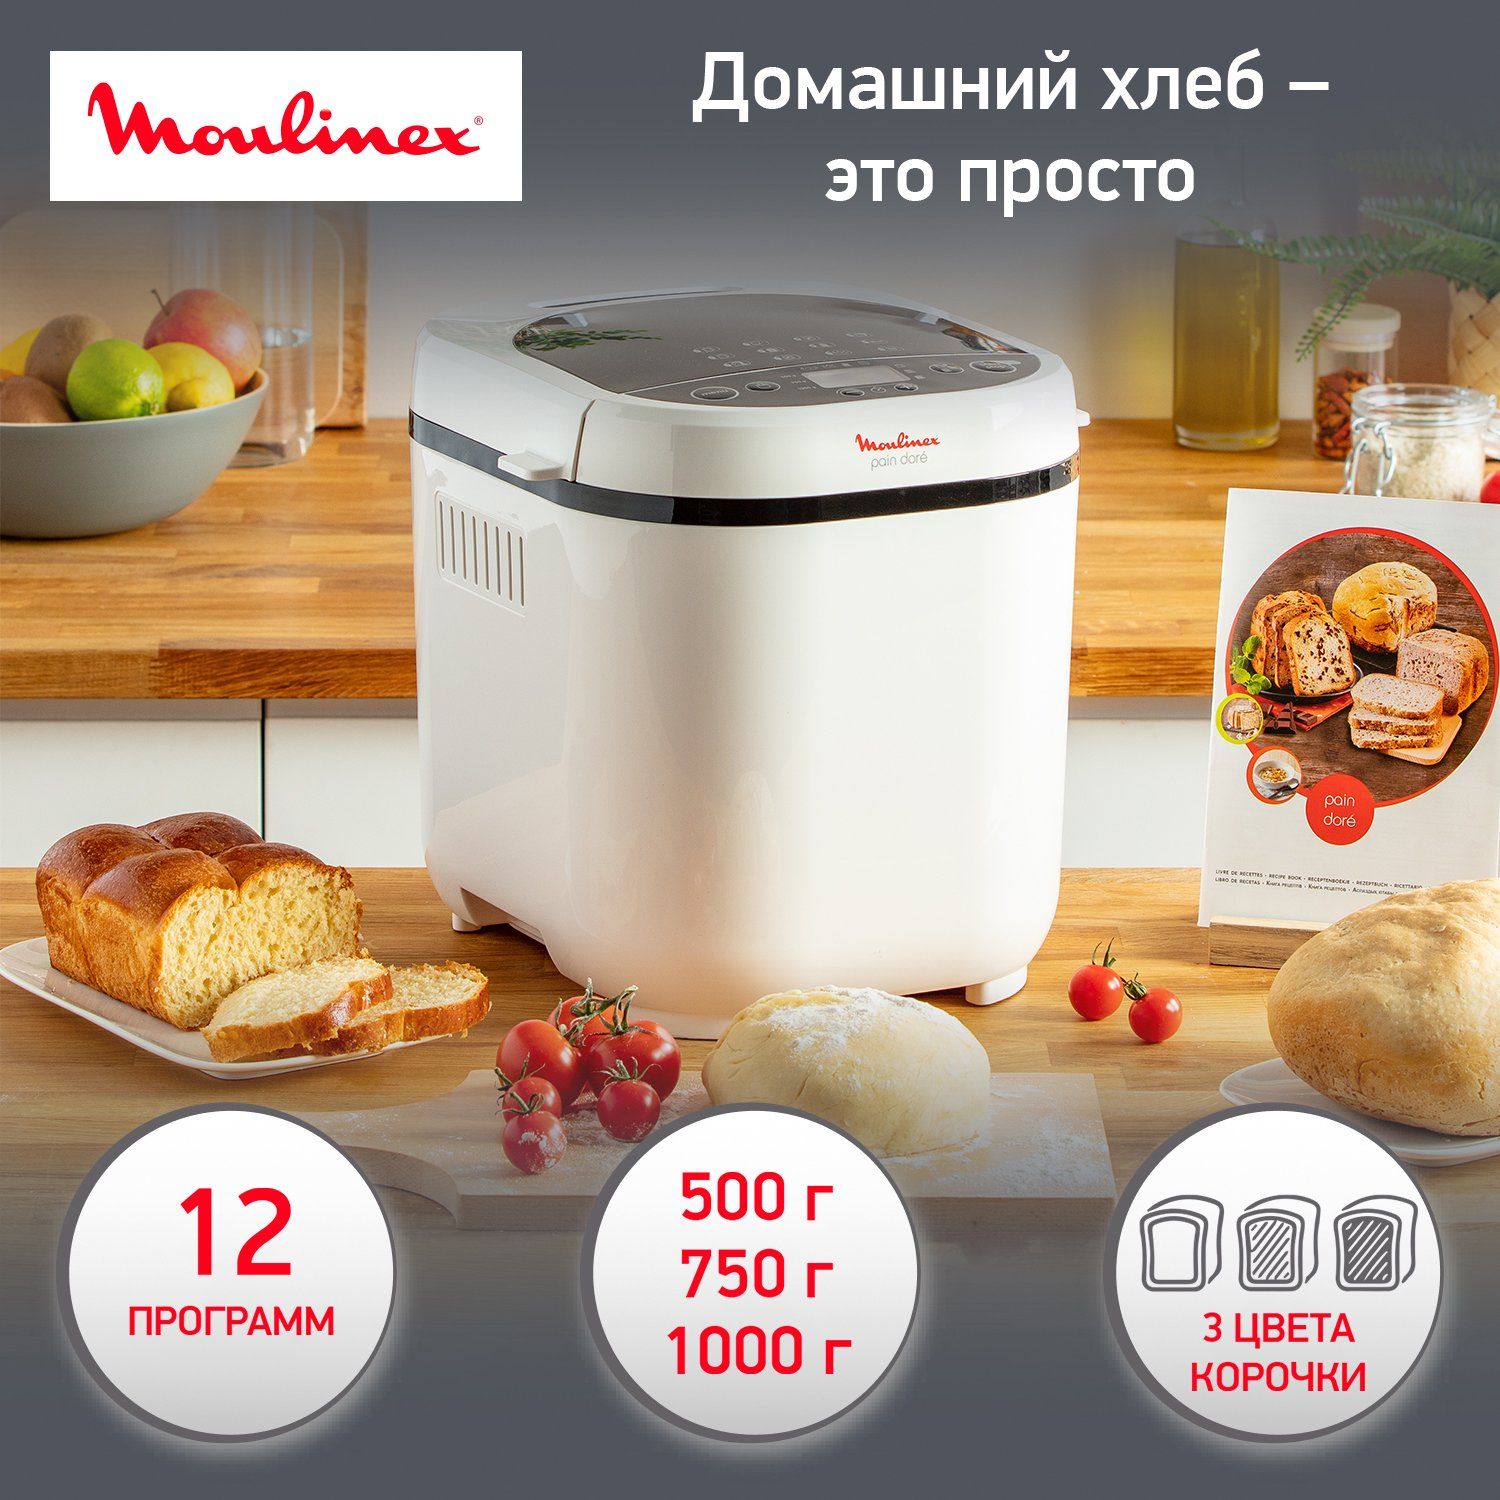 Хлебопечка Moulinex Paine Dore OW210130, купить в Москве, цены в интернет-магазинах на Мегамаркет